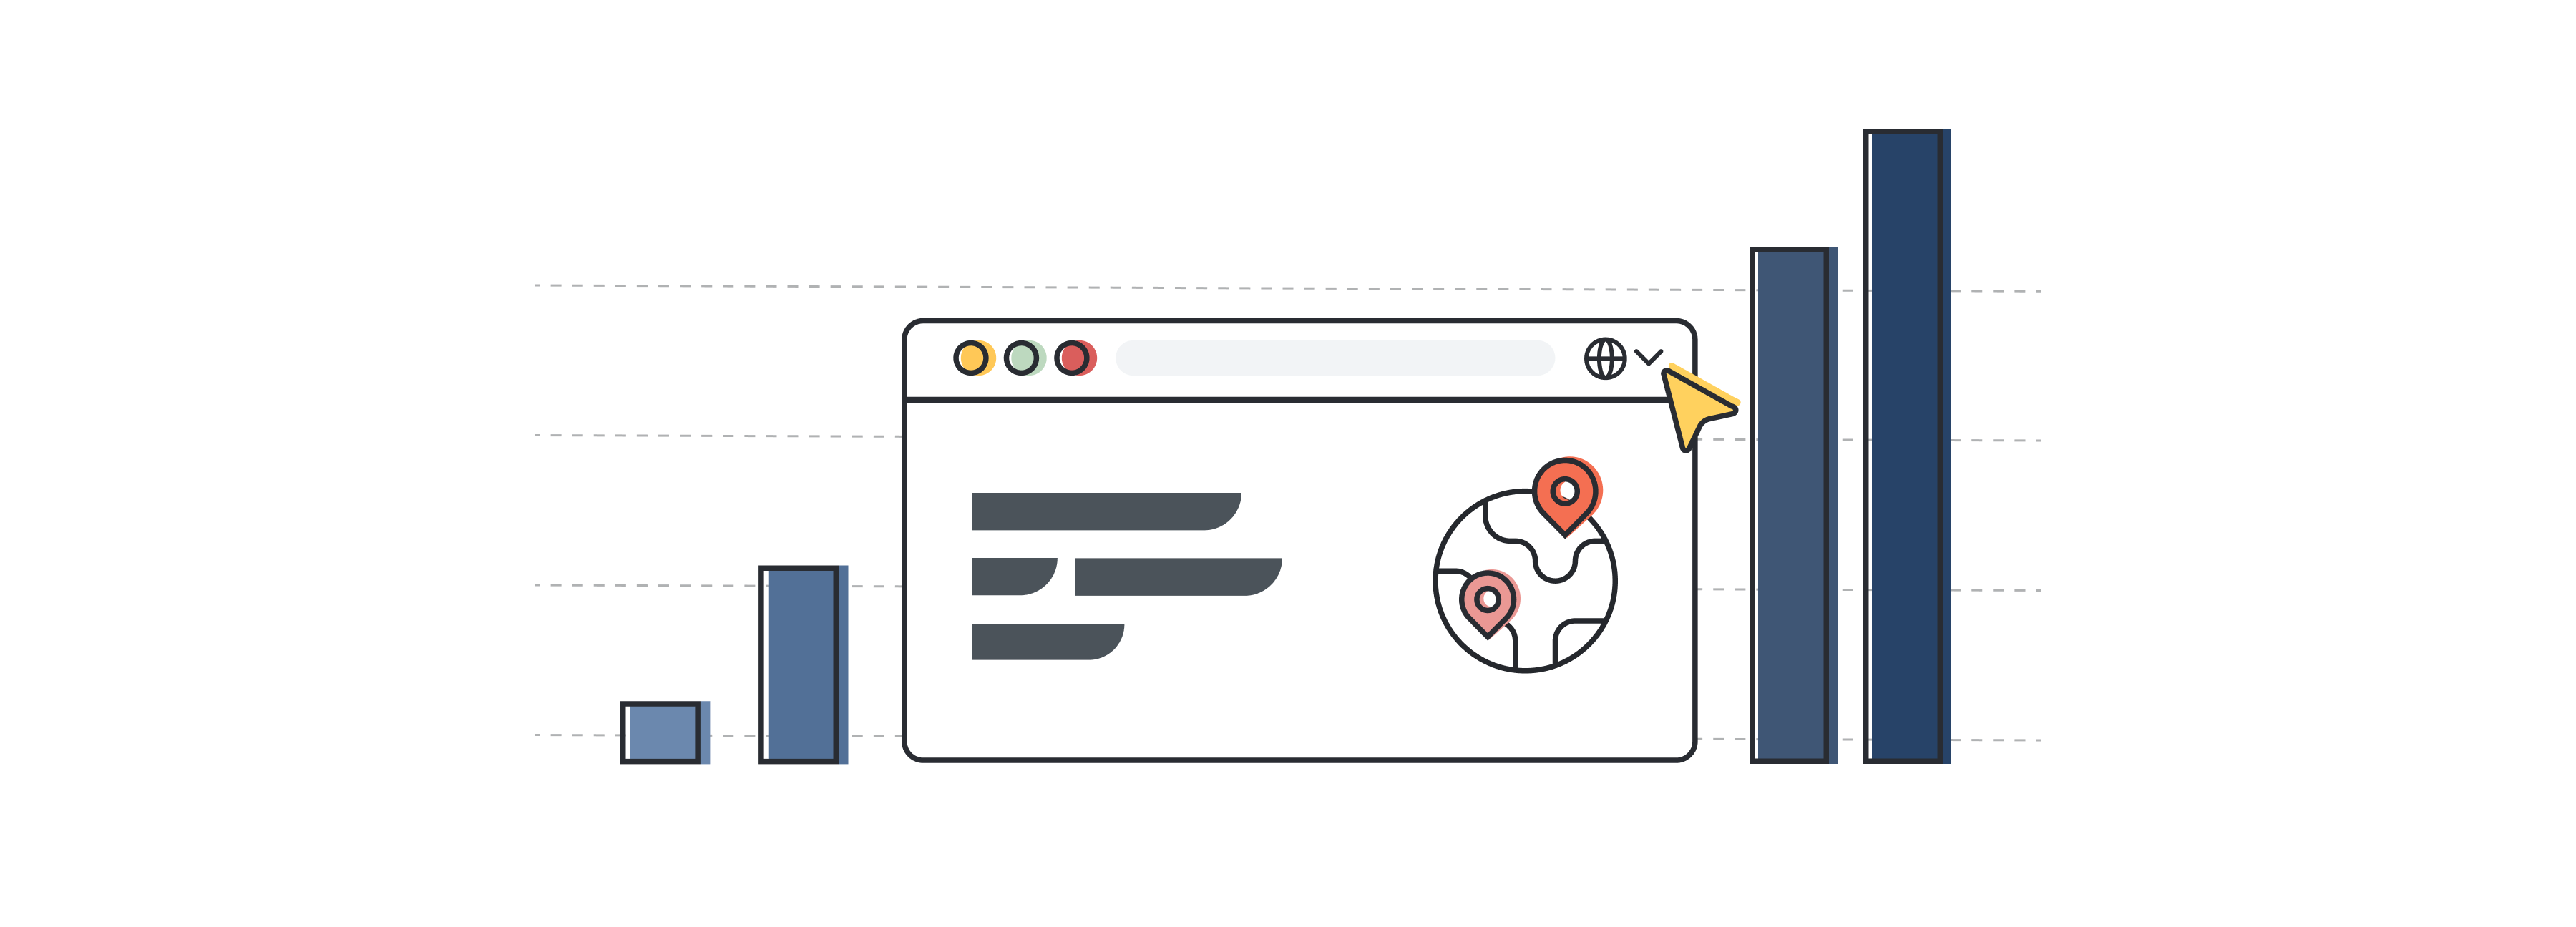 Ilustração de uma interface de um site, que representa a indústria da localização e da tradução, com barras que simbolizam o crescimento